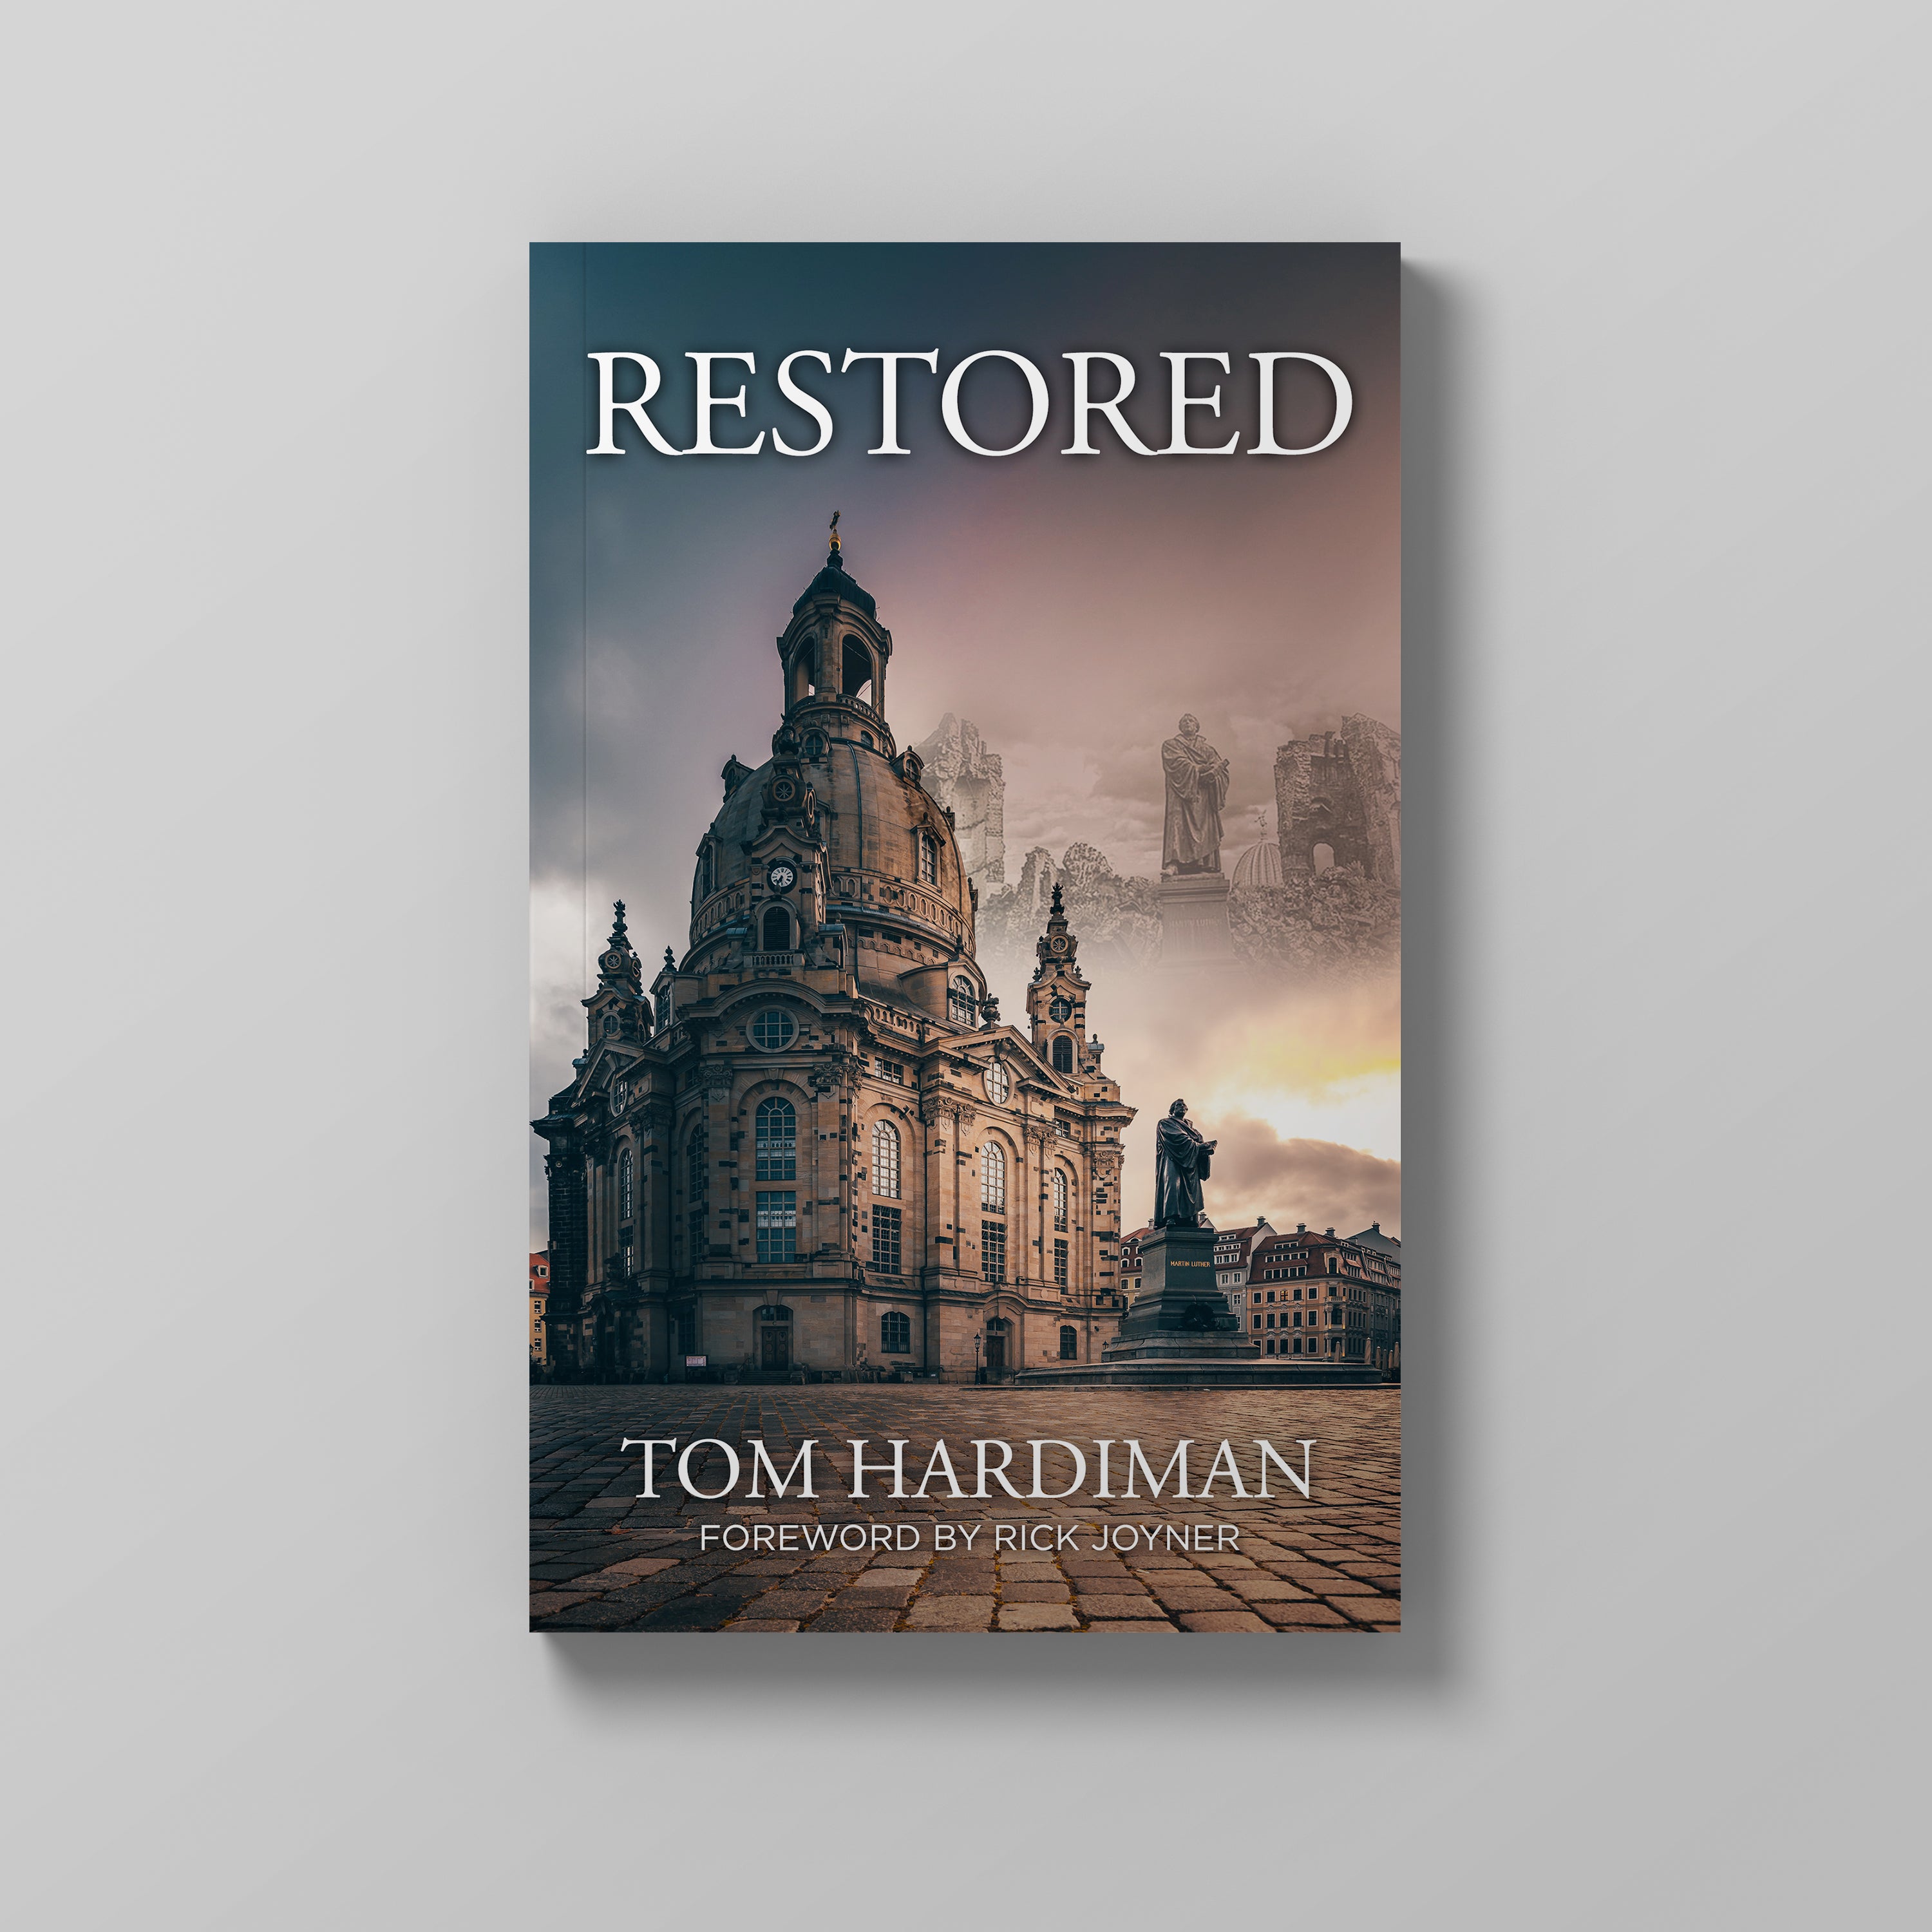 Restored by Tom Hardiman